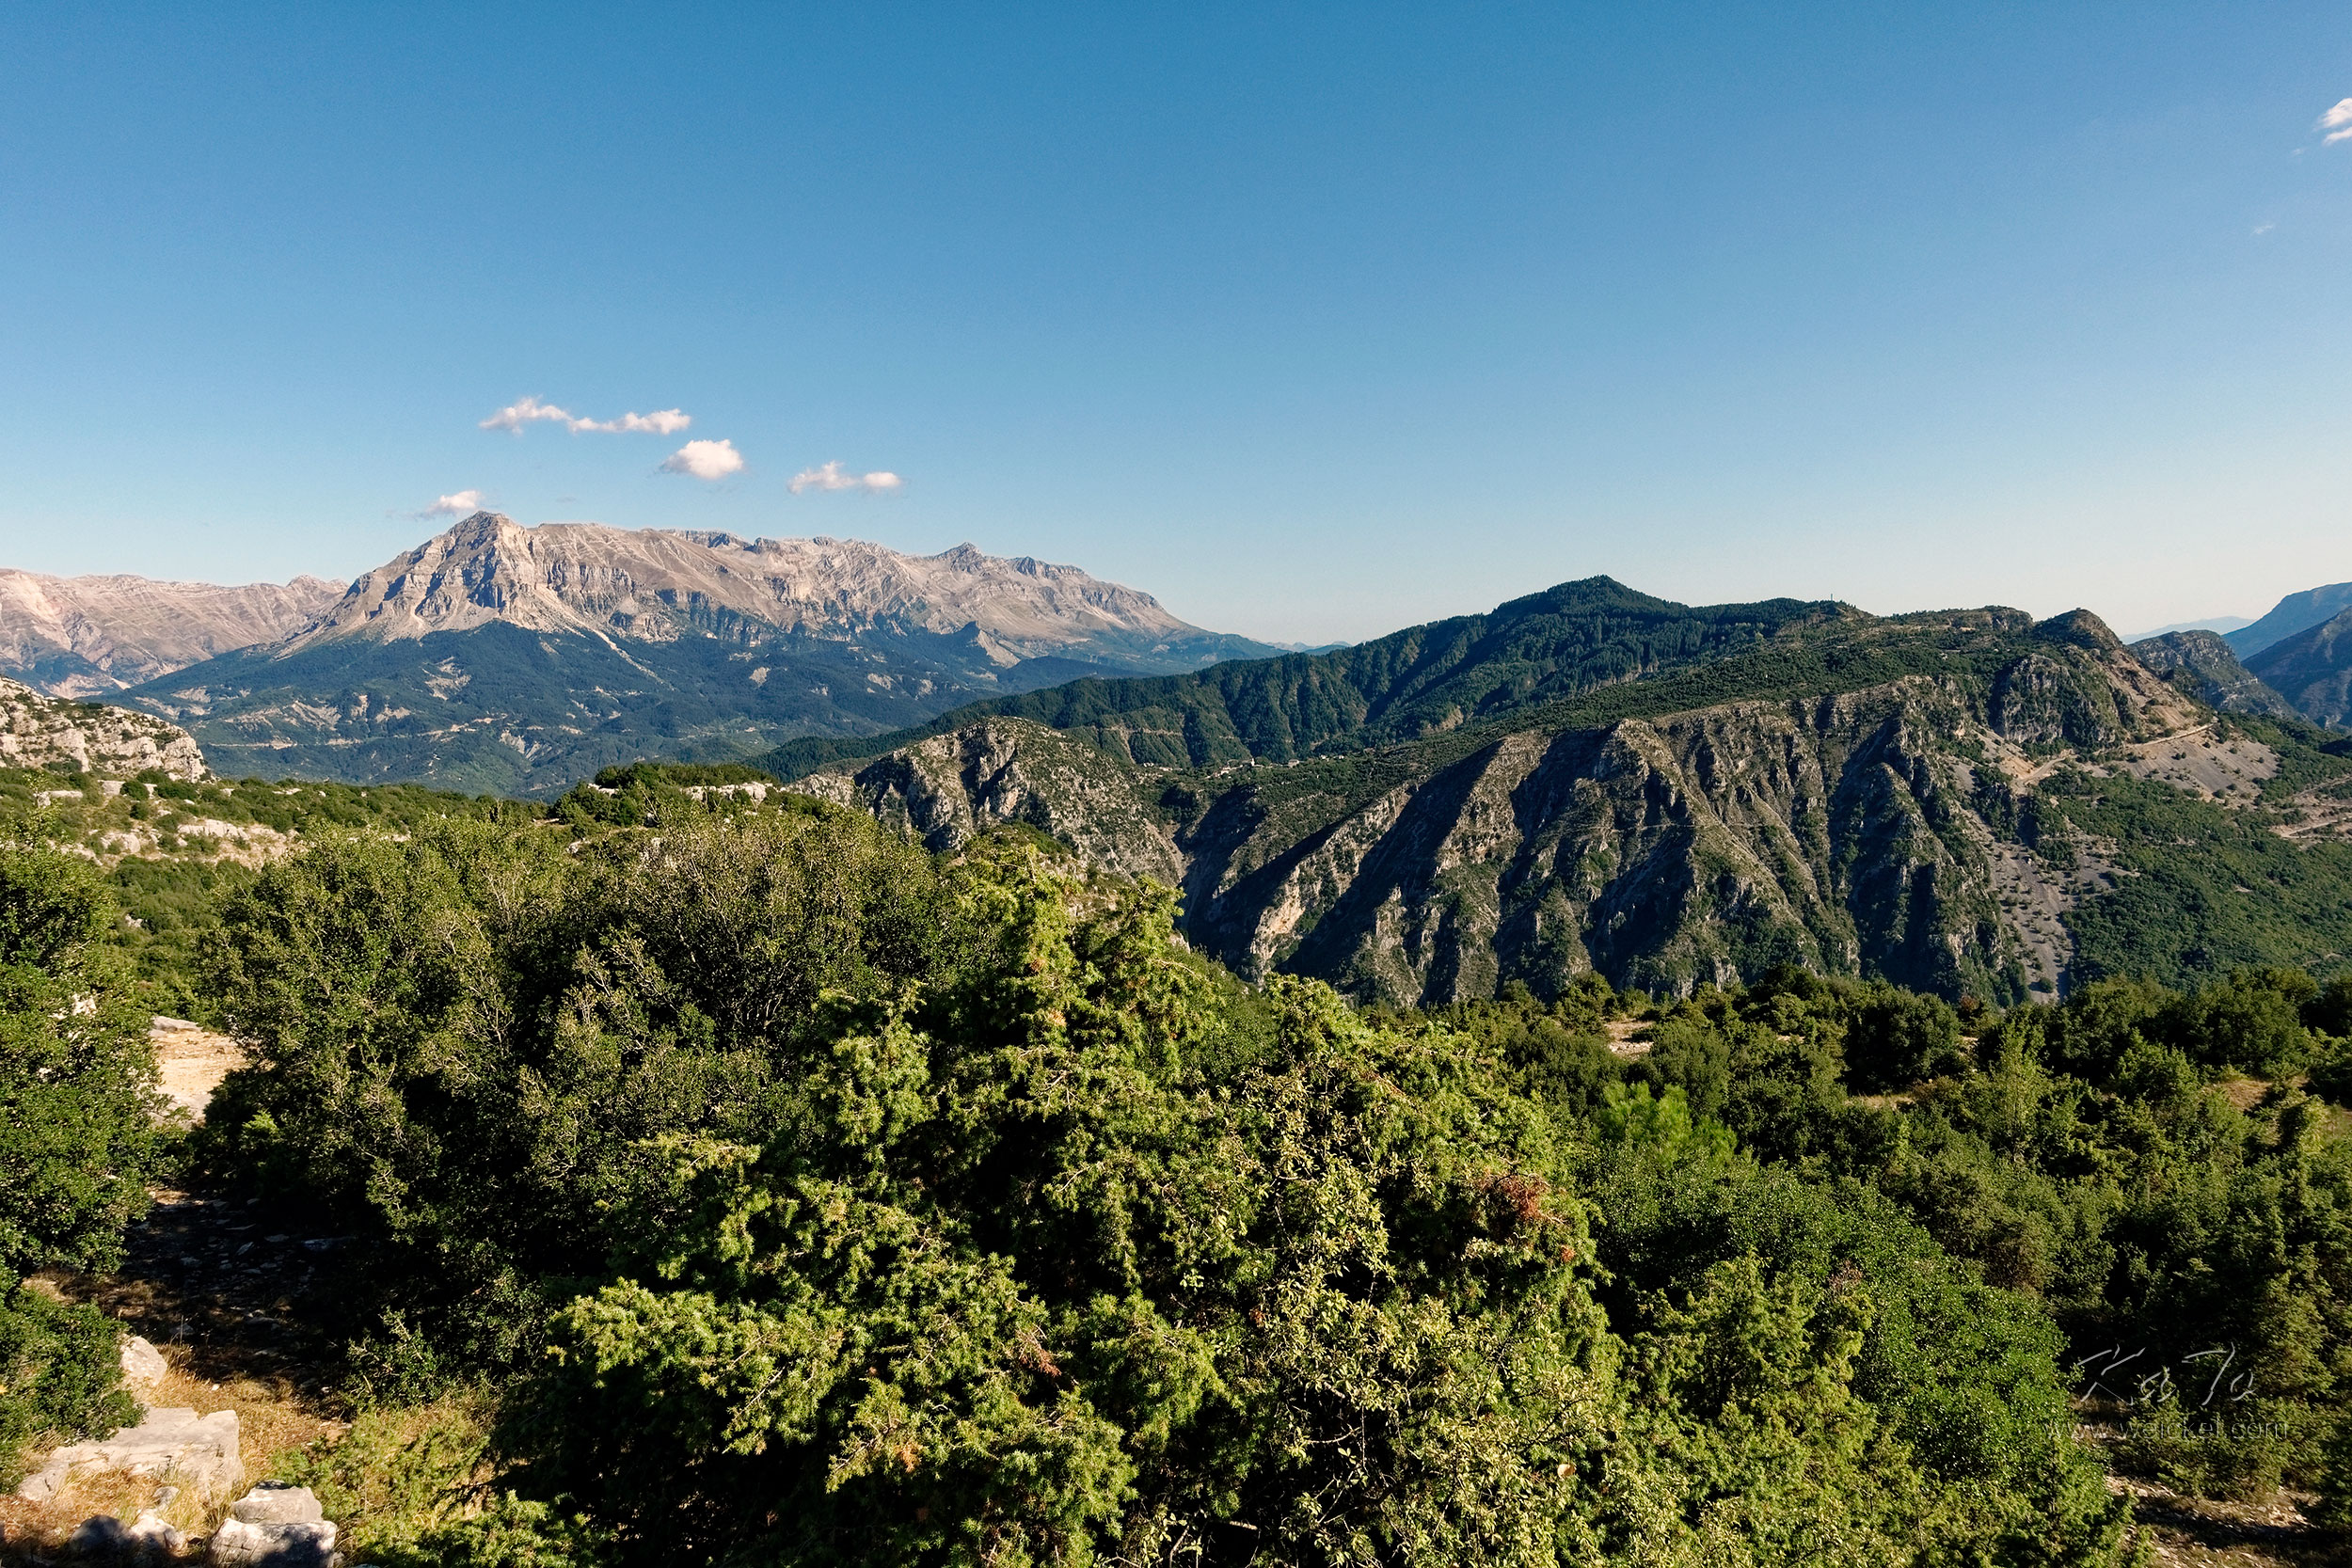 Mountain view near Ioannia